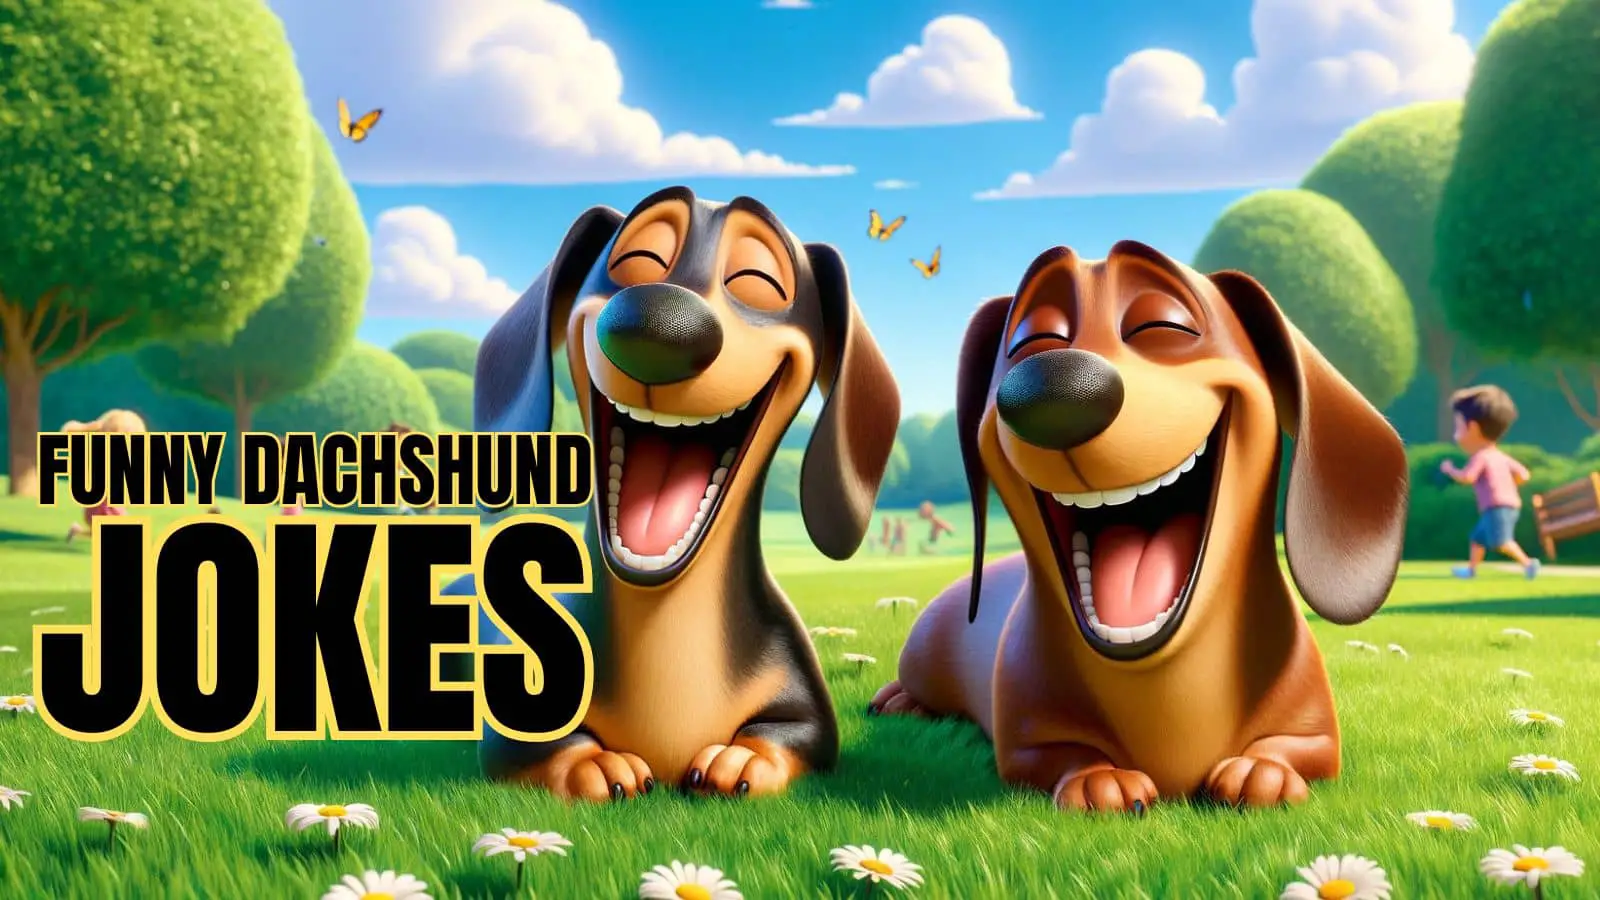 Funny Dachshund Jokes on Dog